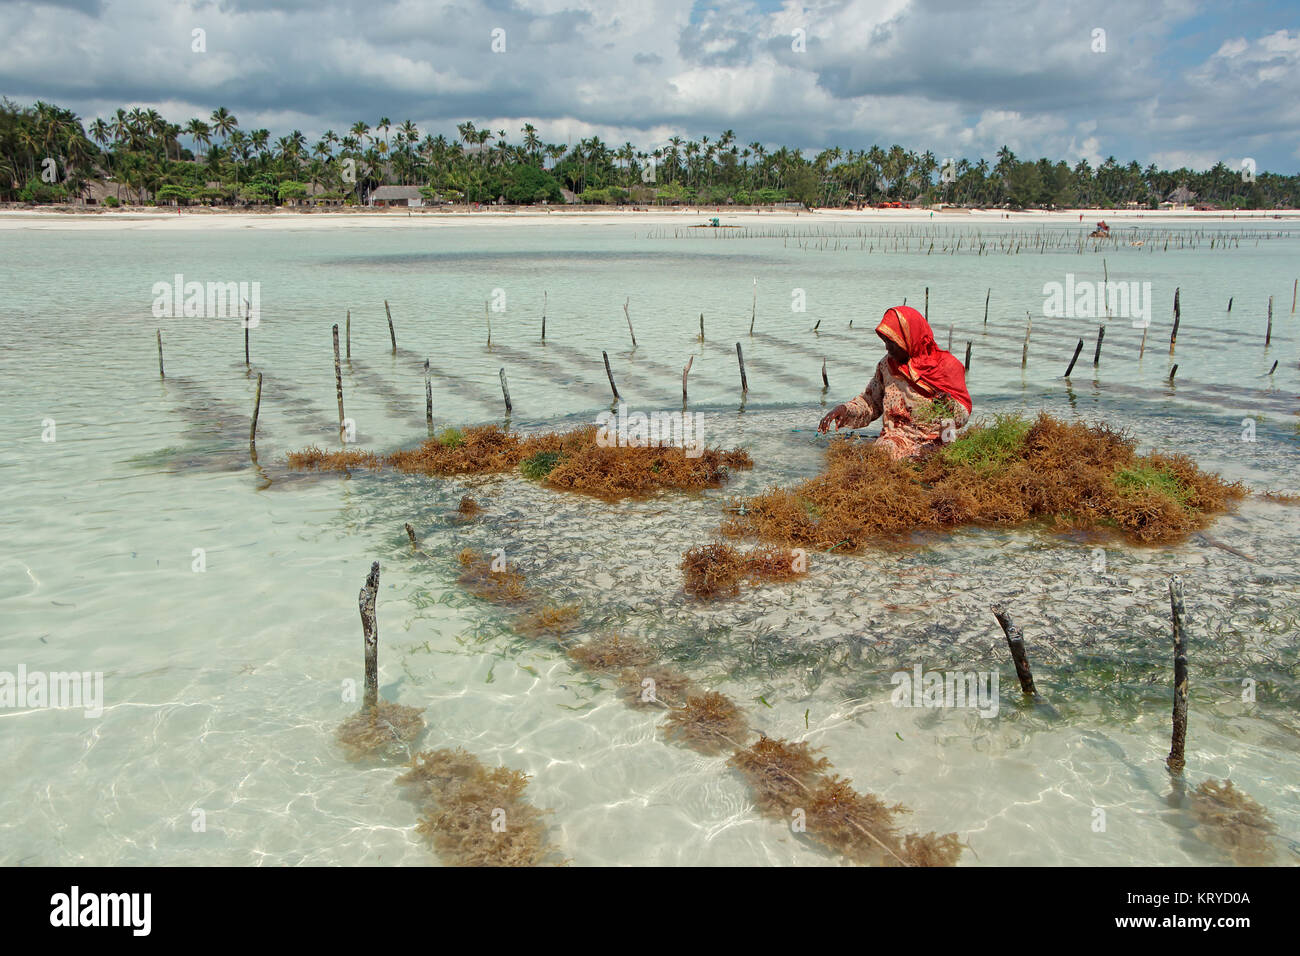 Zanzíbar, Tanzania - Octubre 25, 2014: la mujer no identificada la recolección de algas cultivadas en las aguas poco profundas y claras aguas costeras de la isla de Zanzíbar Foto de stock